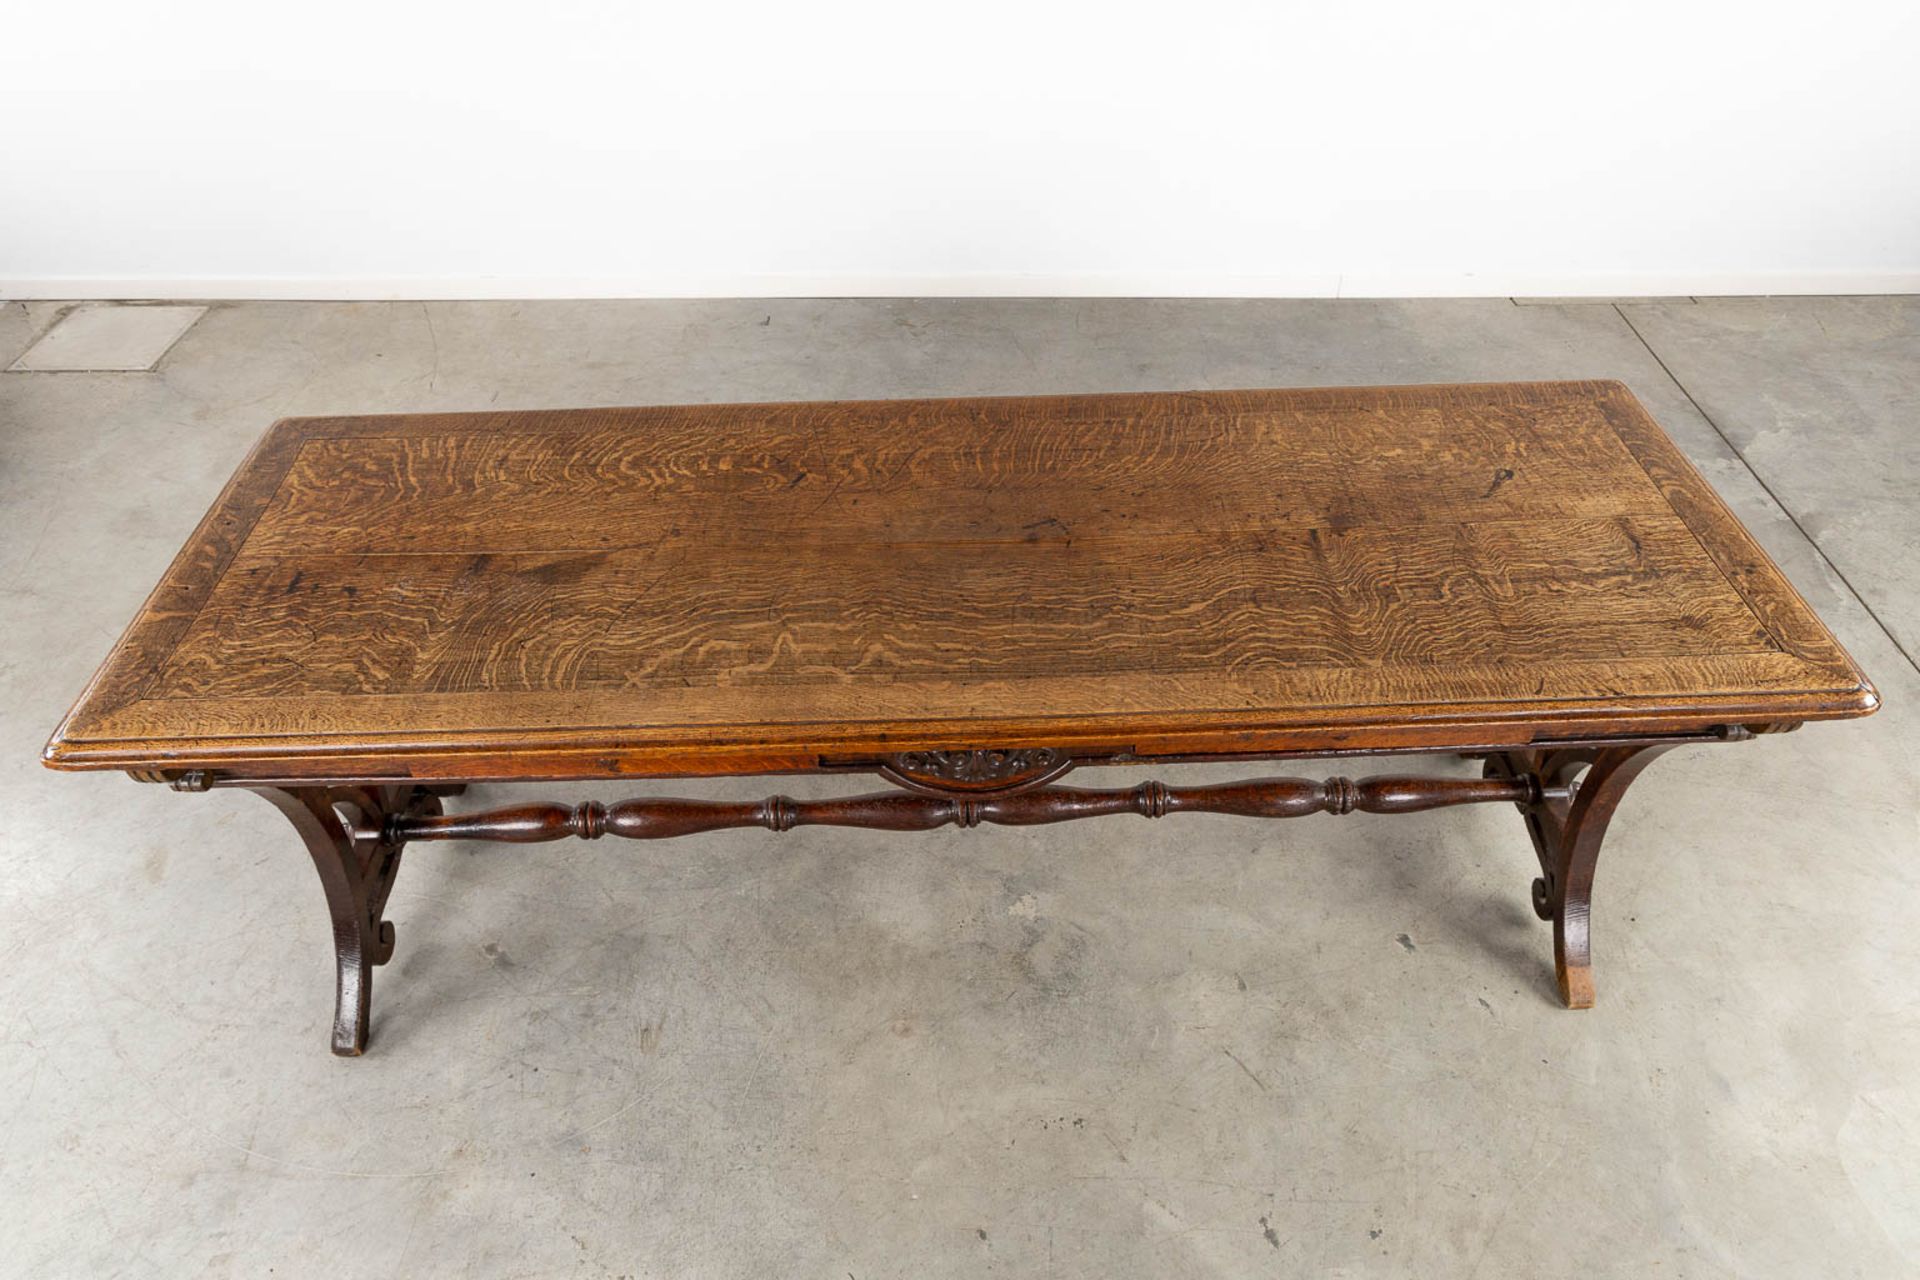 An antique desk/table with sculptures and a drawer, oak. 19th C. (L:77 x W:217 x H:76 cm) - Bild 9 aus 13